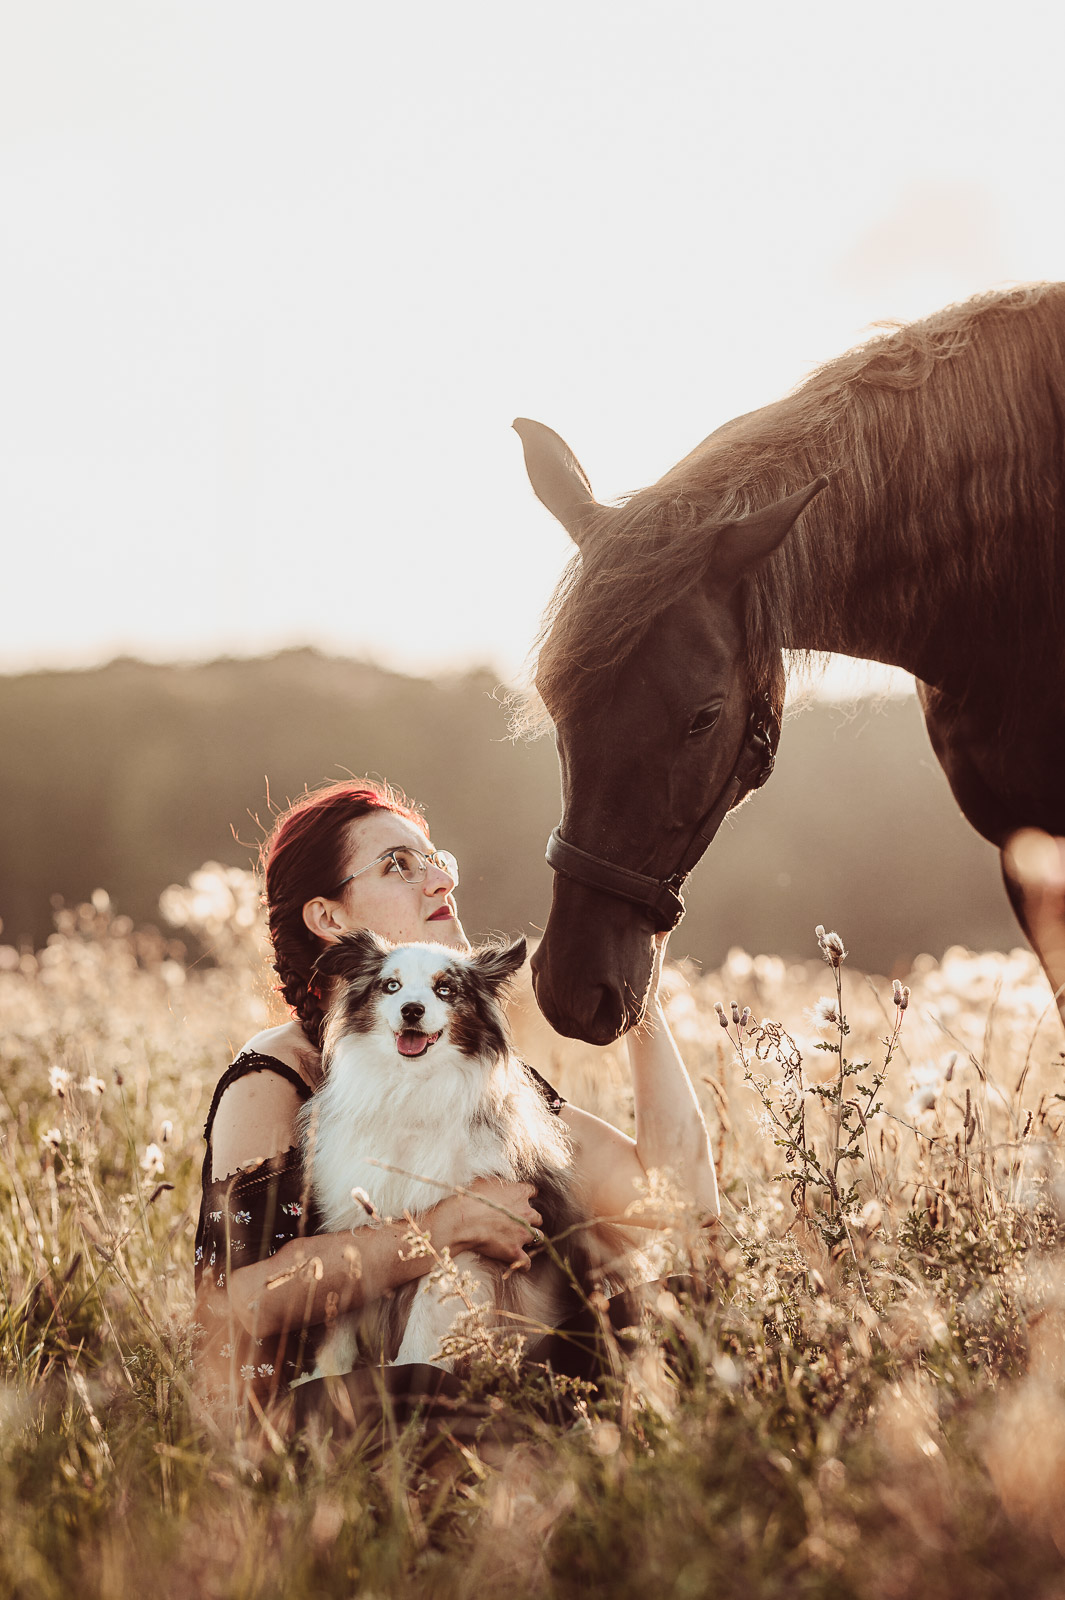 Mensch-Hund-Fotografie mit deinem Hund und Pferd | Hundefotograf & Tierfotograf Rostock